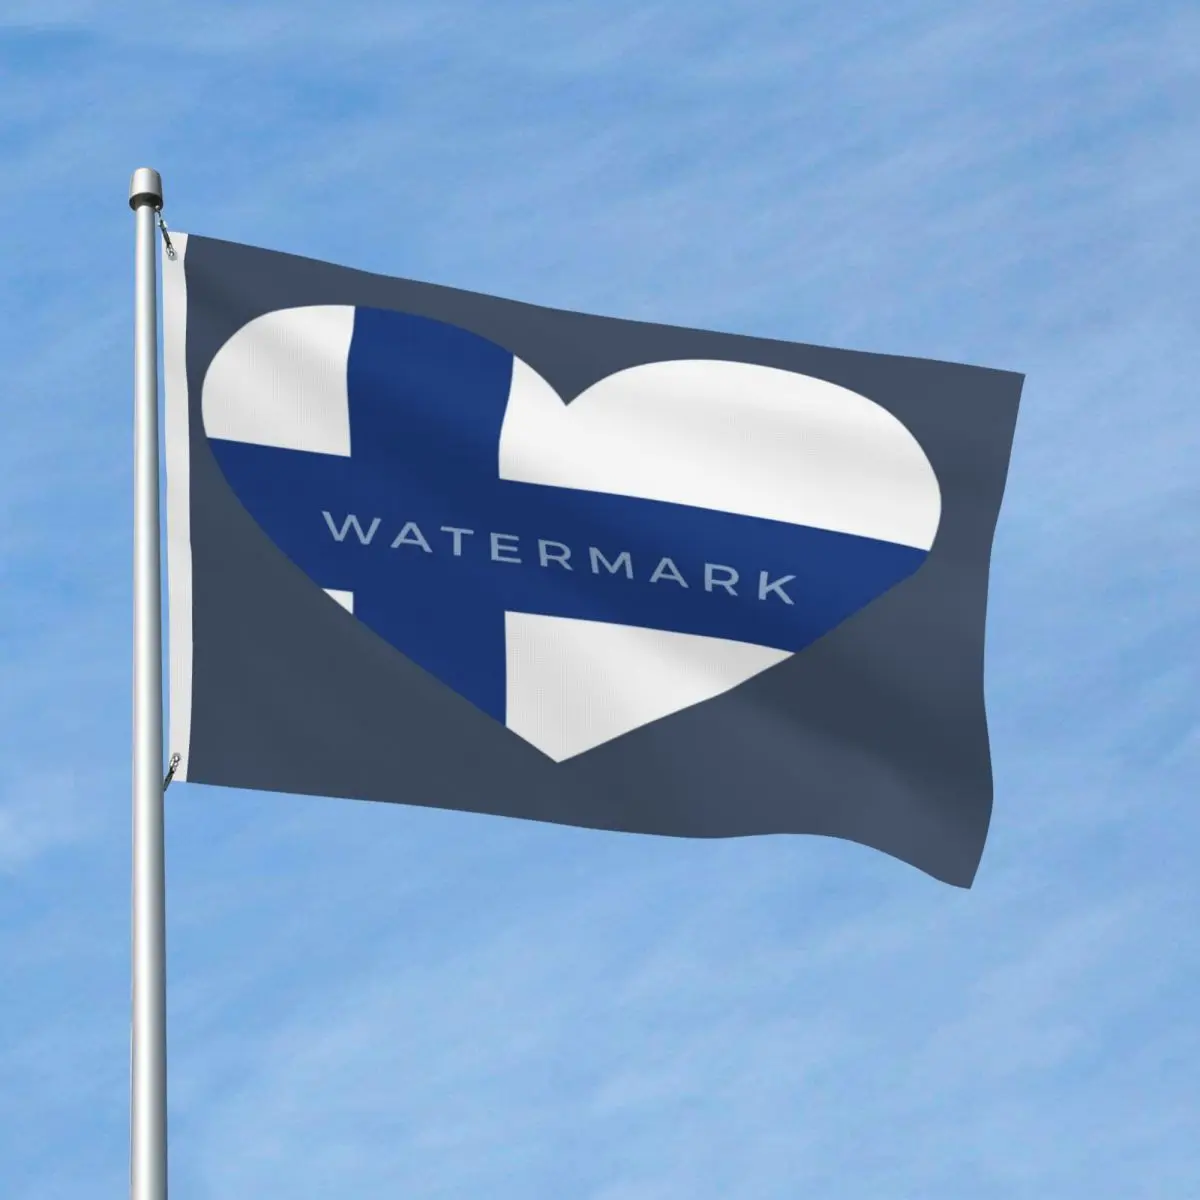 

Geschenk-liebe-geschenk-финляндийский флаг современные яркие цвета для помещений из полиэстера без запаха разные стили